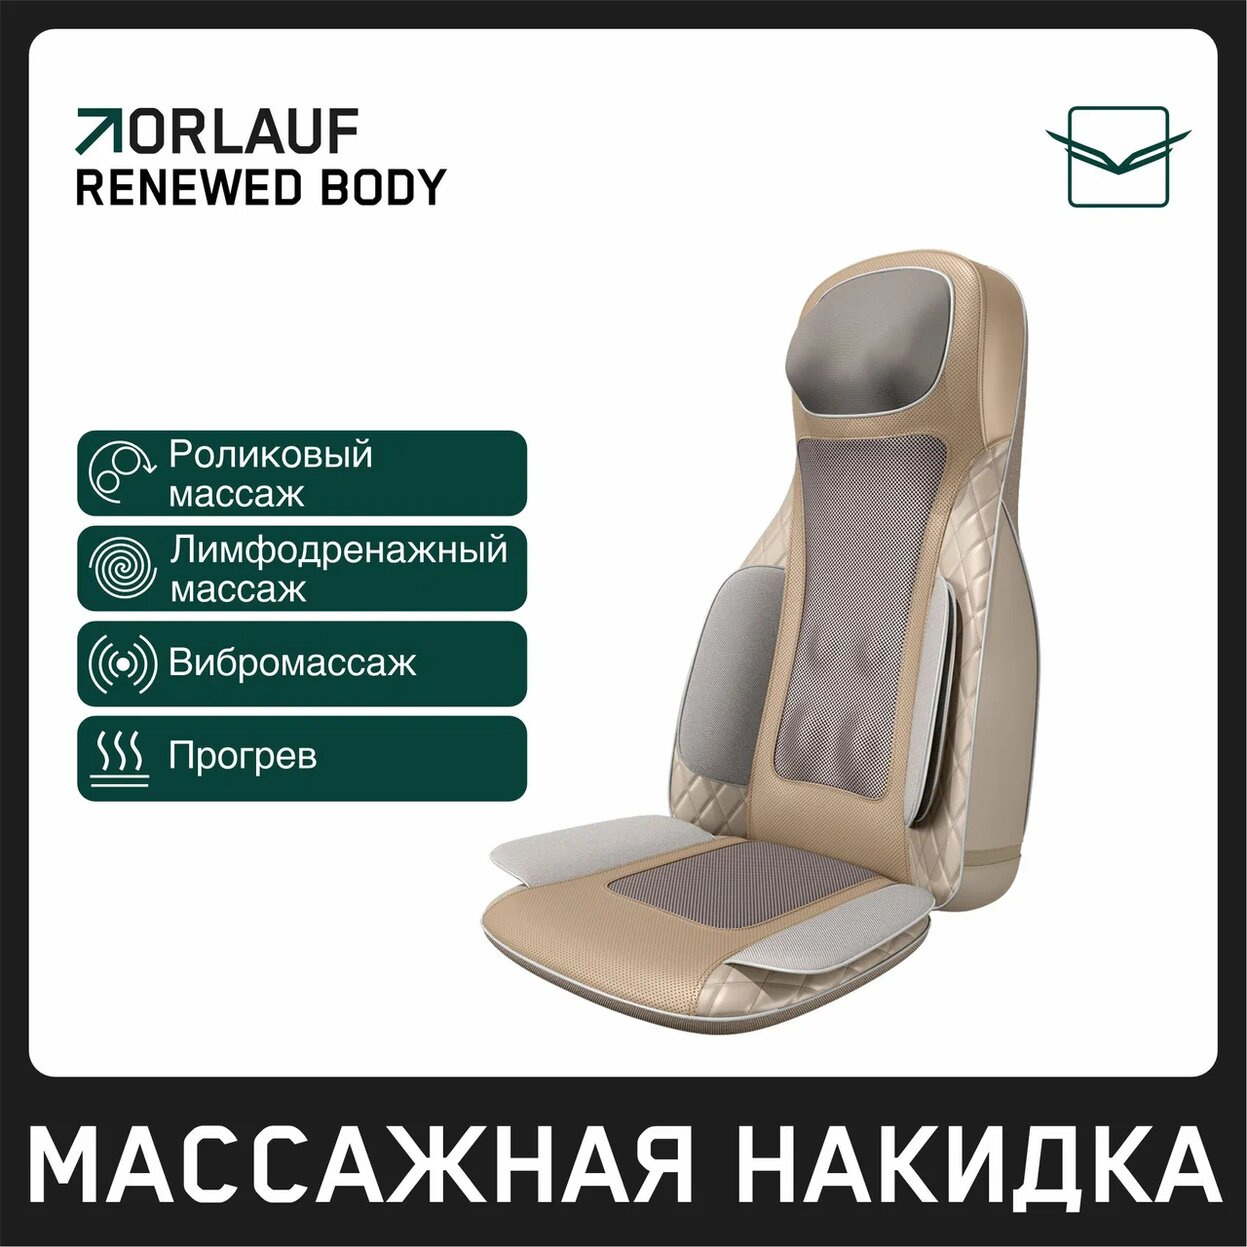 Renewed Body в Казани по цене 39900 ₽ в категории массажные накидки Orlauf